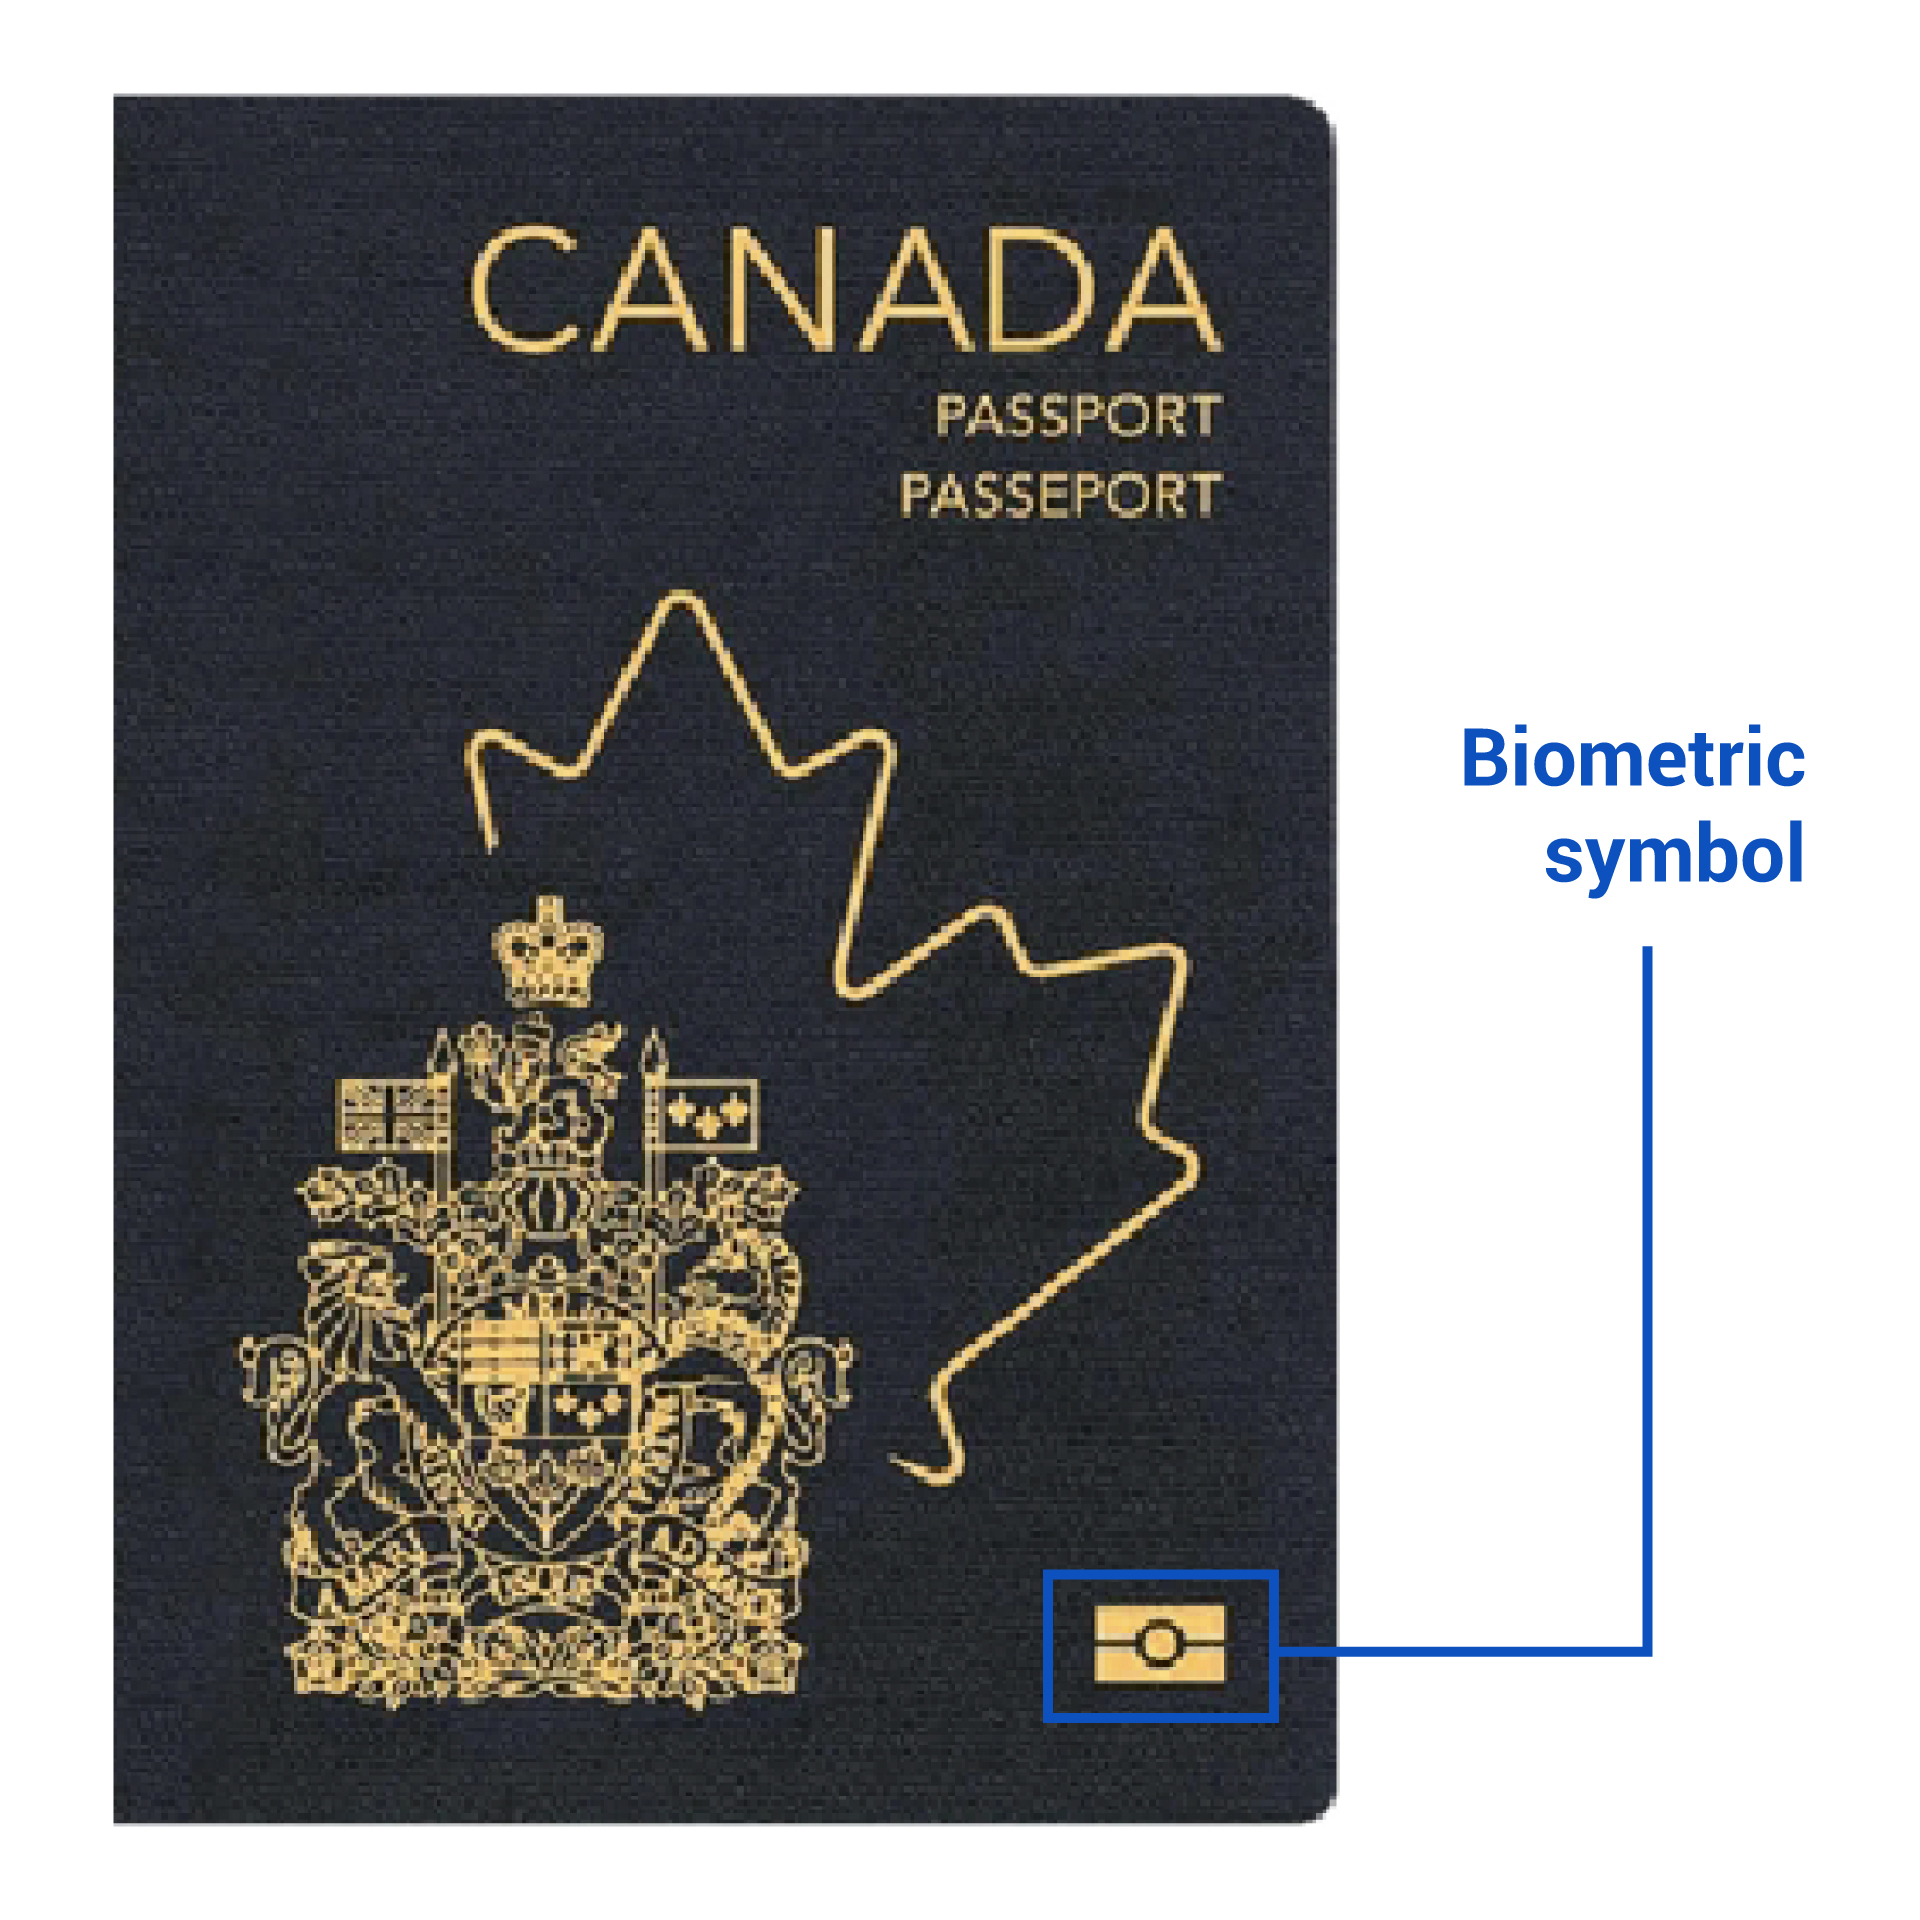 Passport biometric symbol